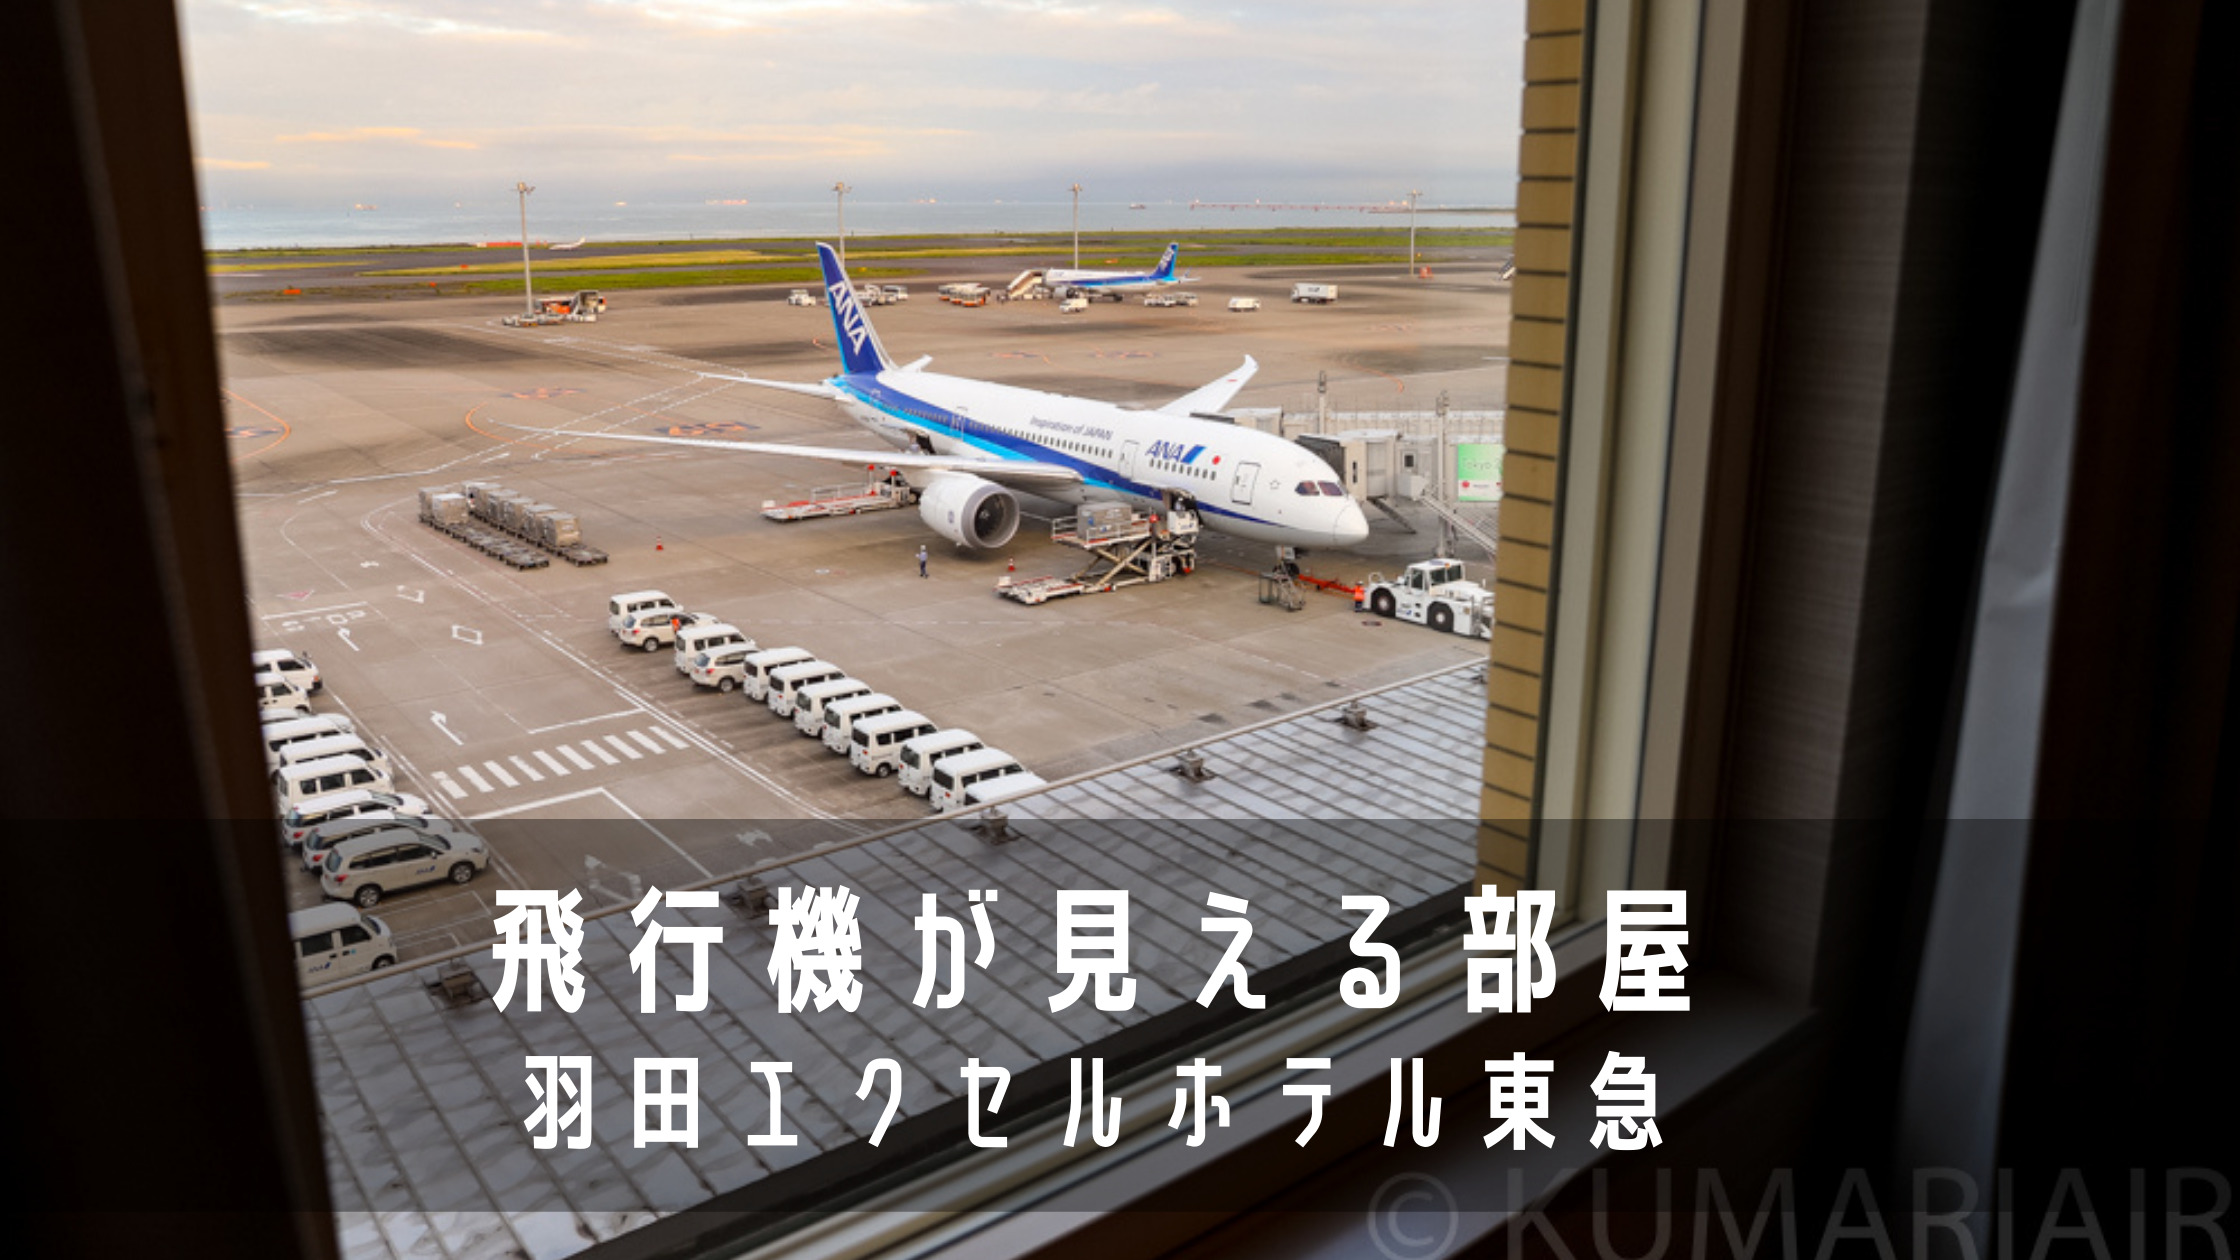 羽田空港第2ターミナルの飛行機が丸見えの部屋に泊まってみた 羽田エクセルホテル東急 宿泊記 シテイリョウコウ